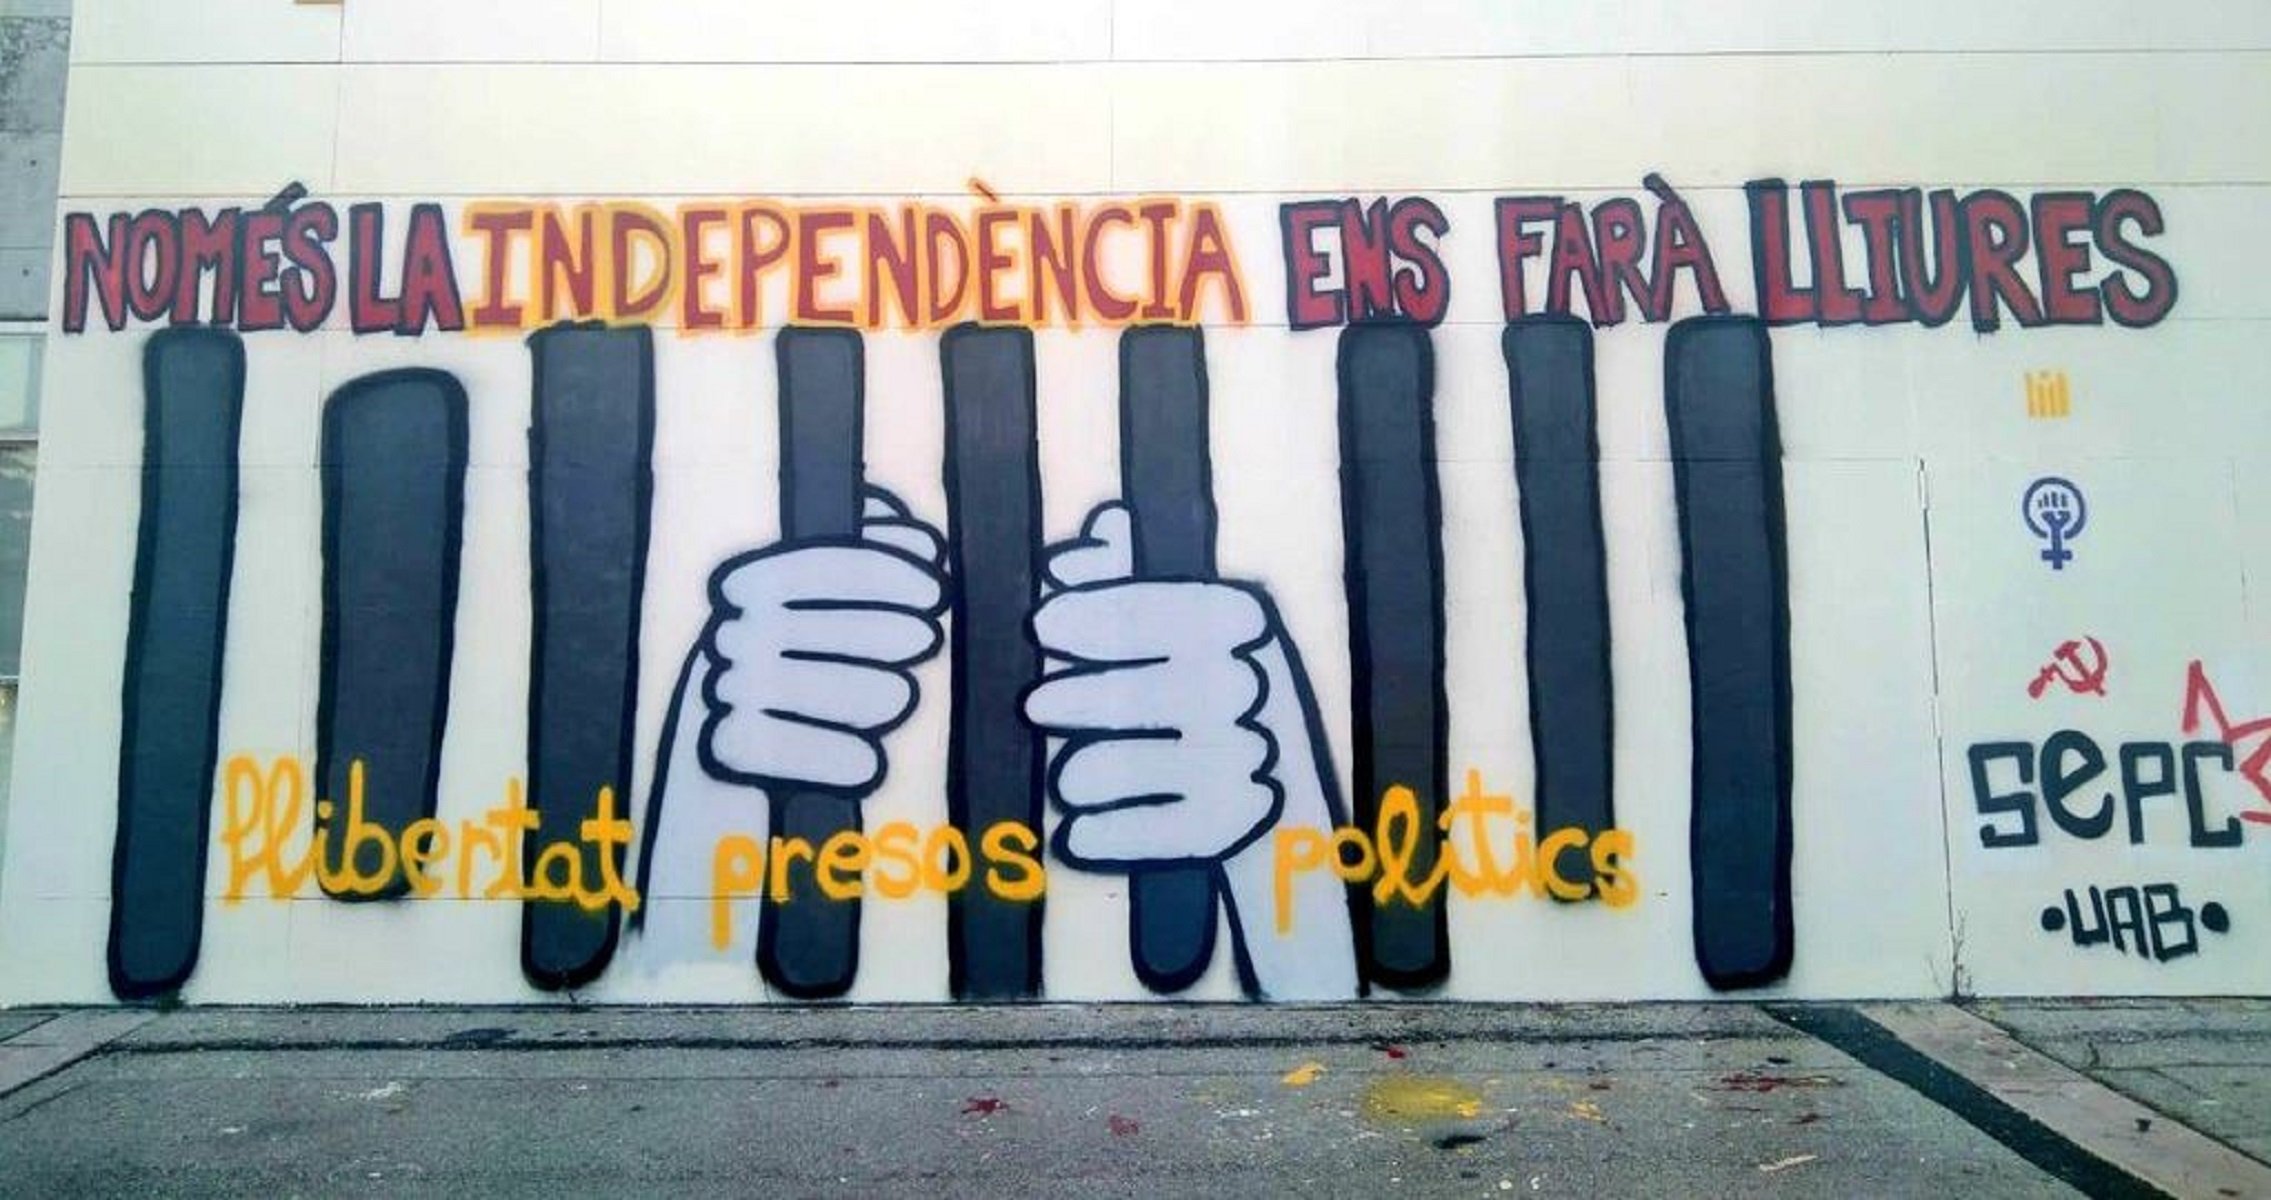 La Junta Electoral obliga a la UAB a retirar murales y pintadas independentistas